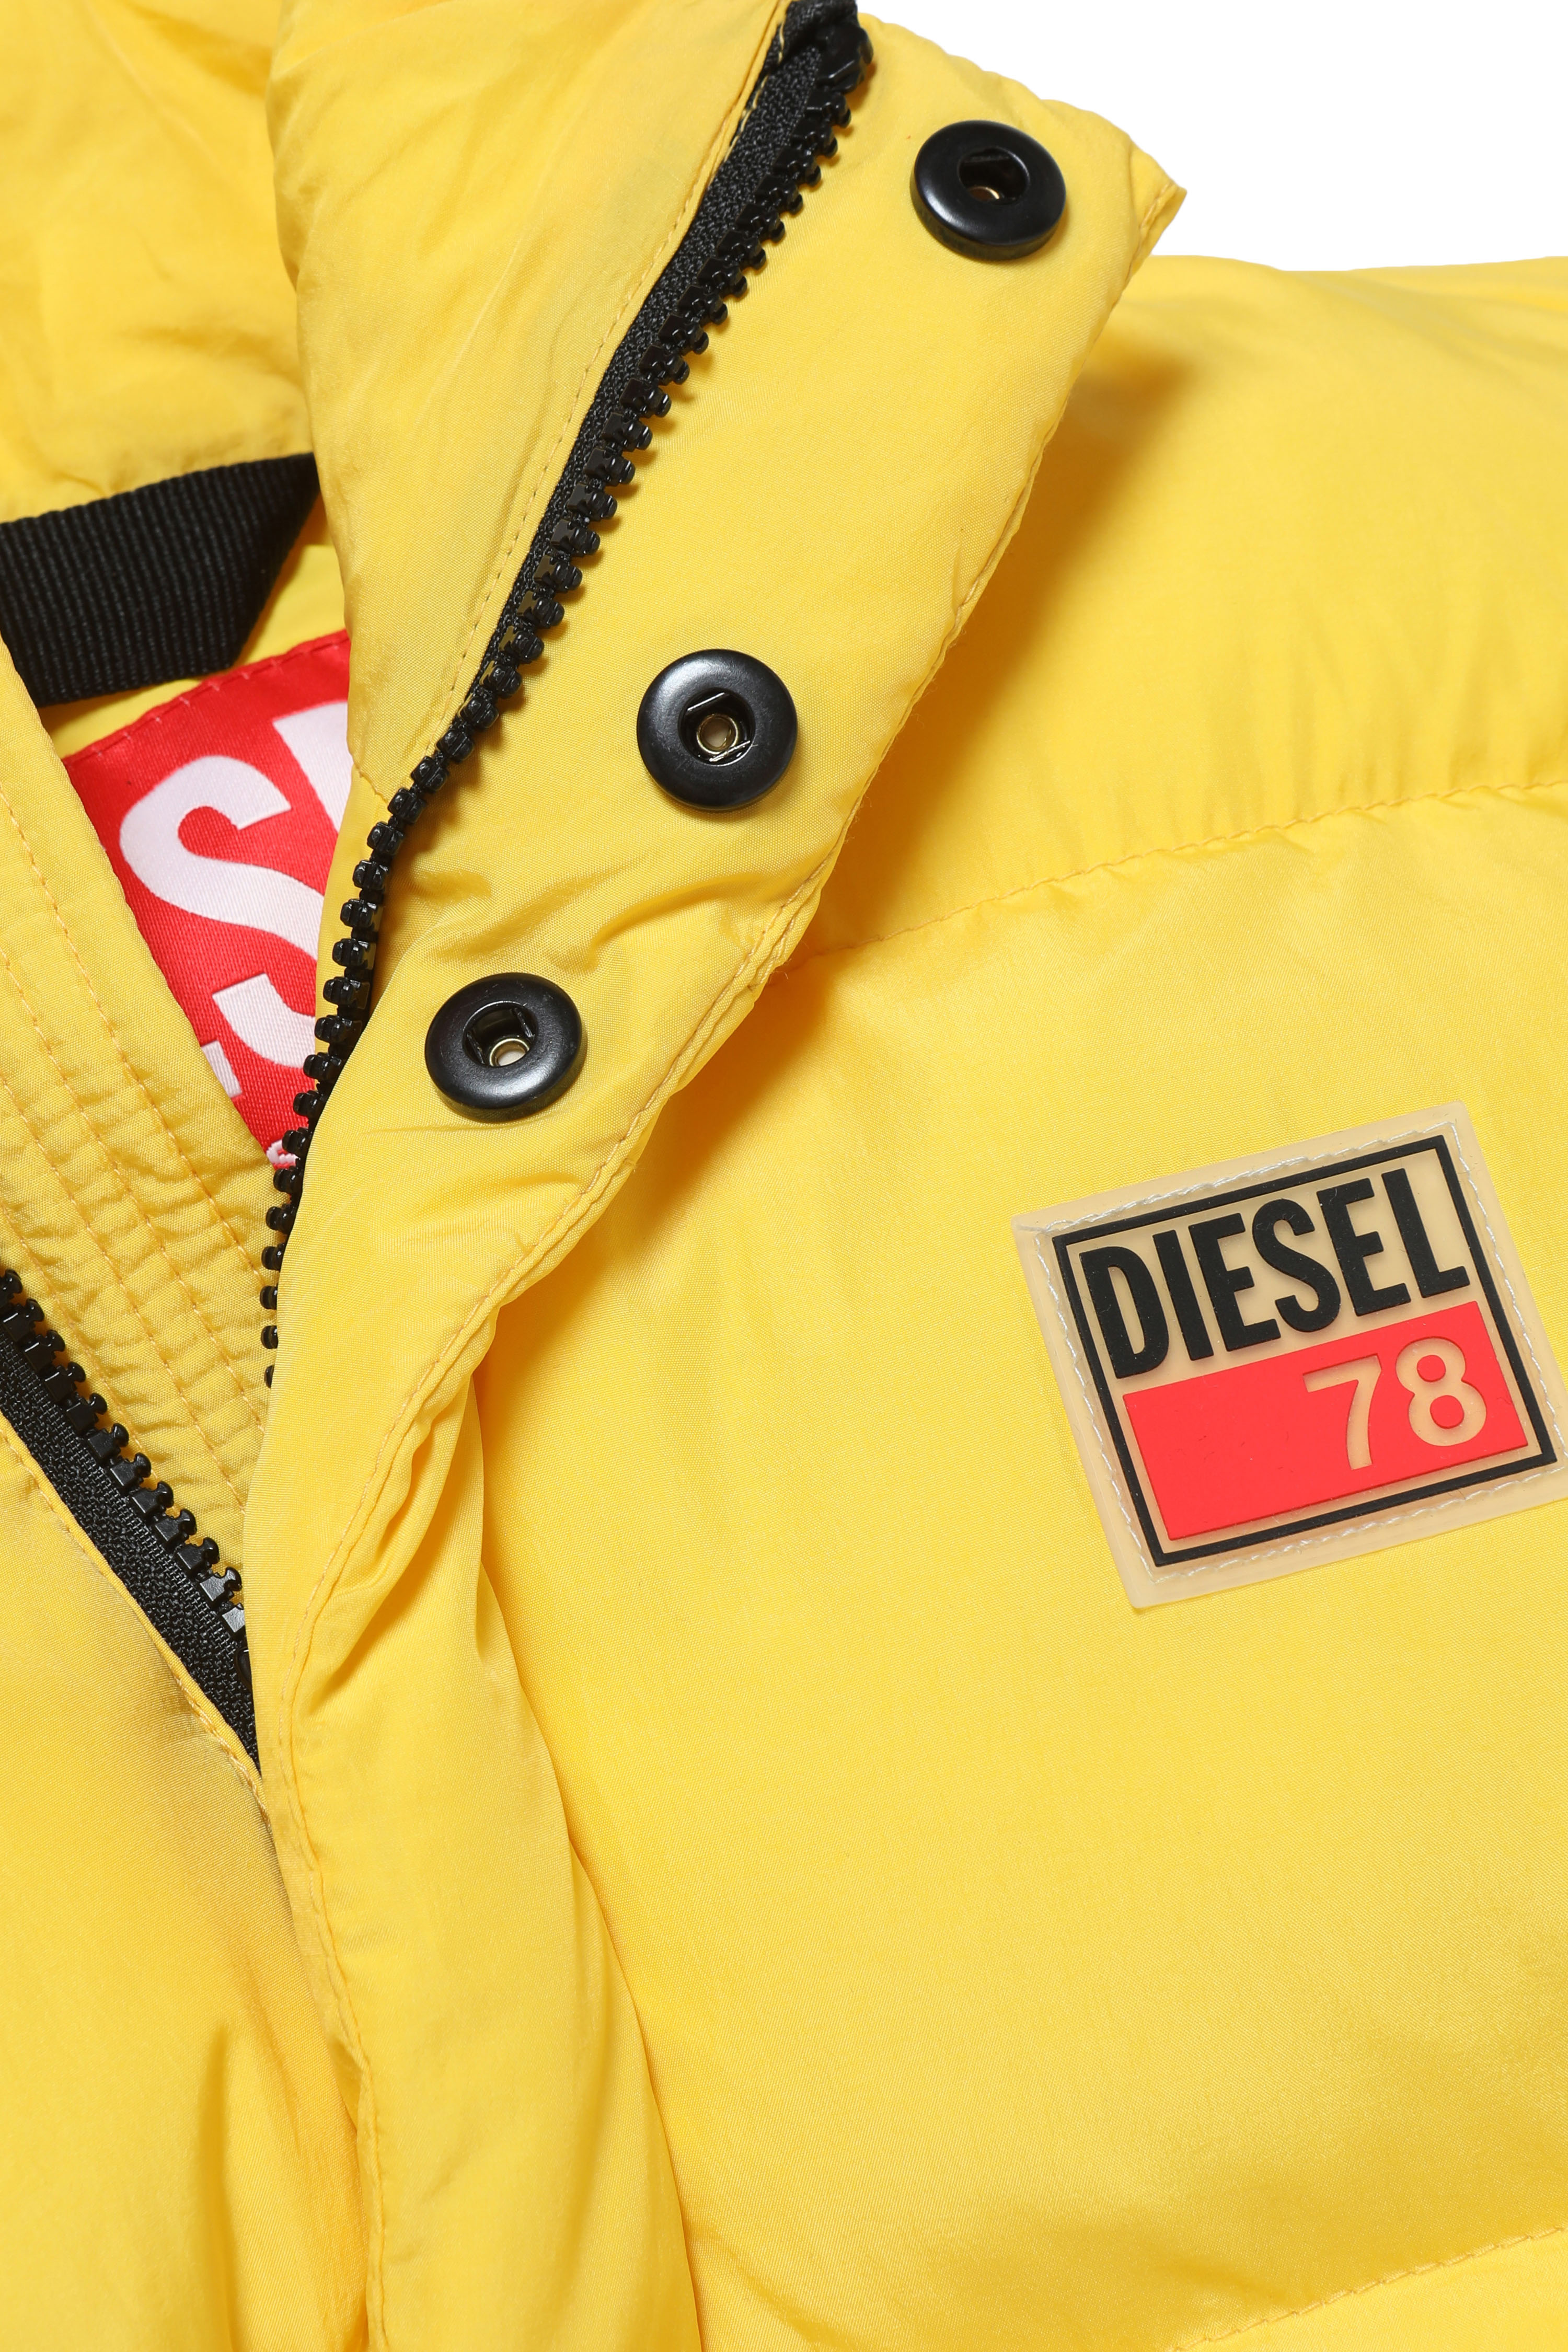 Diesel - JPIL, Yellow - Image 3